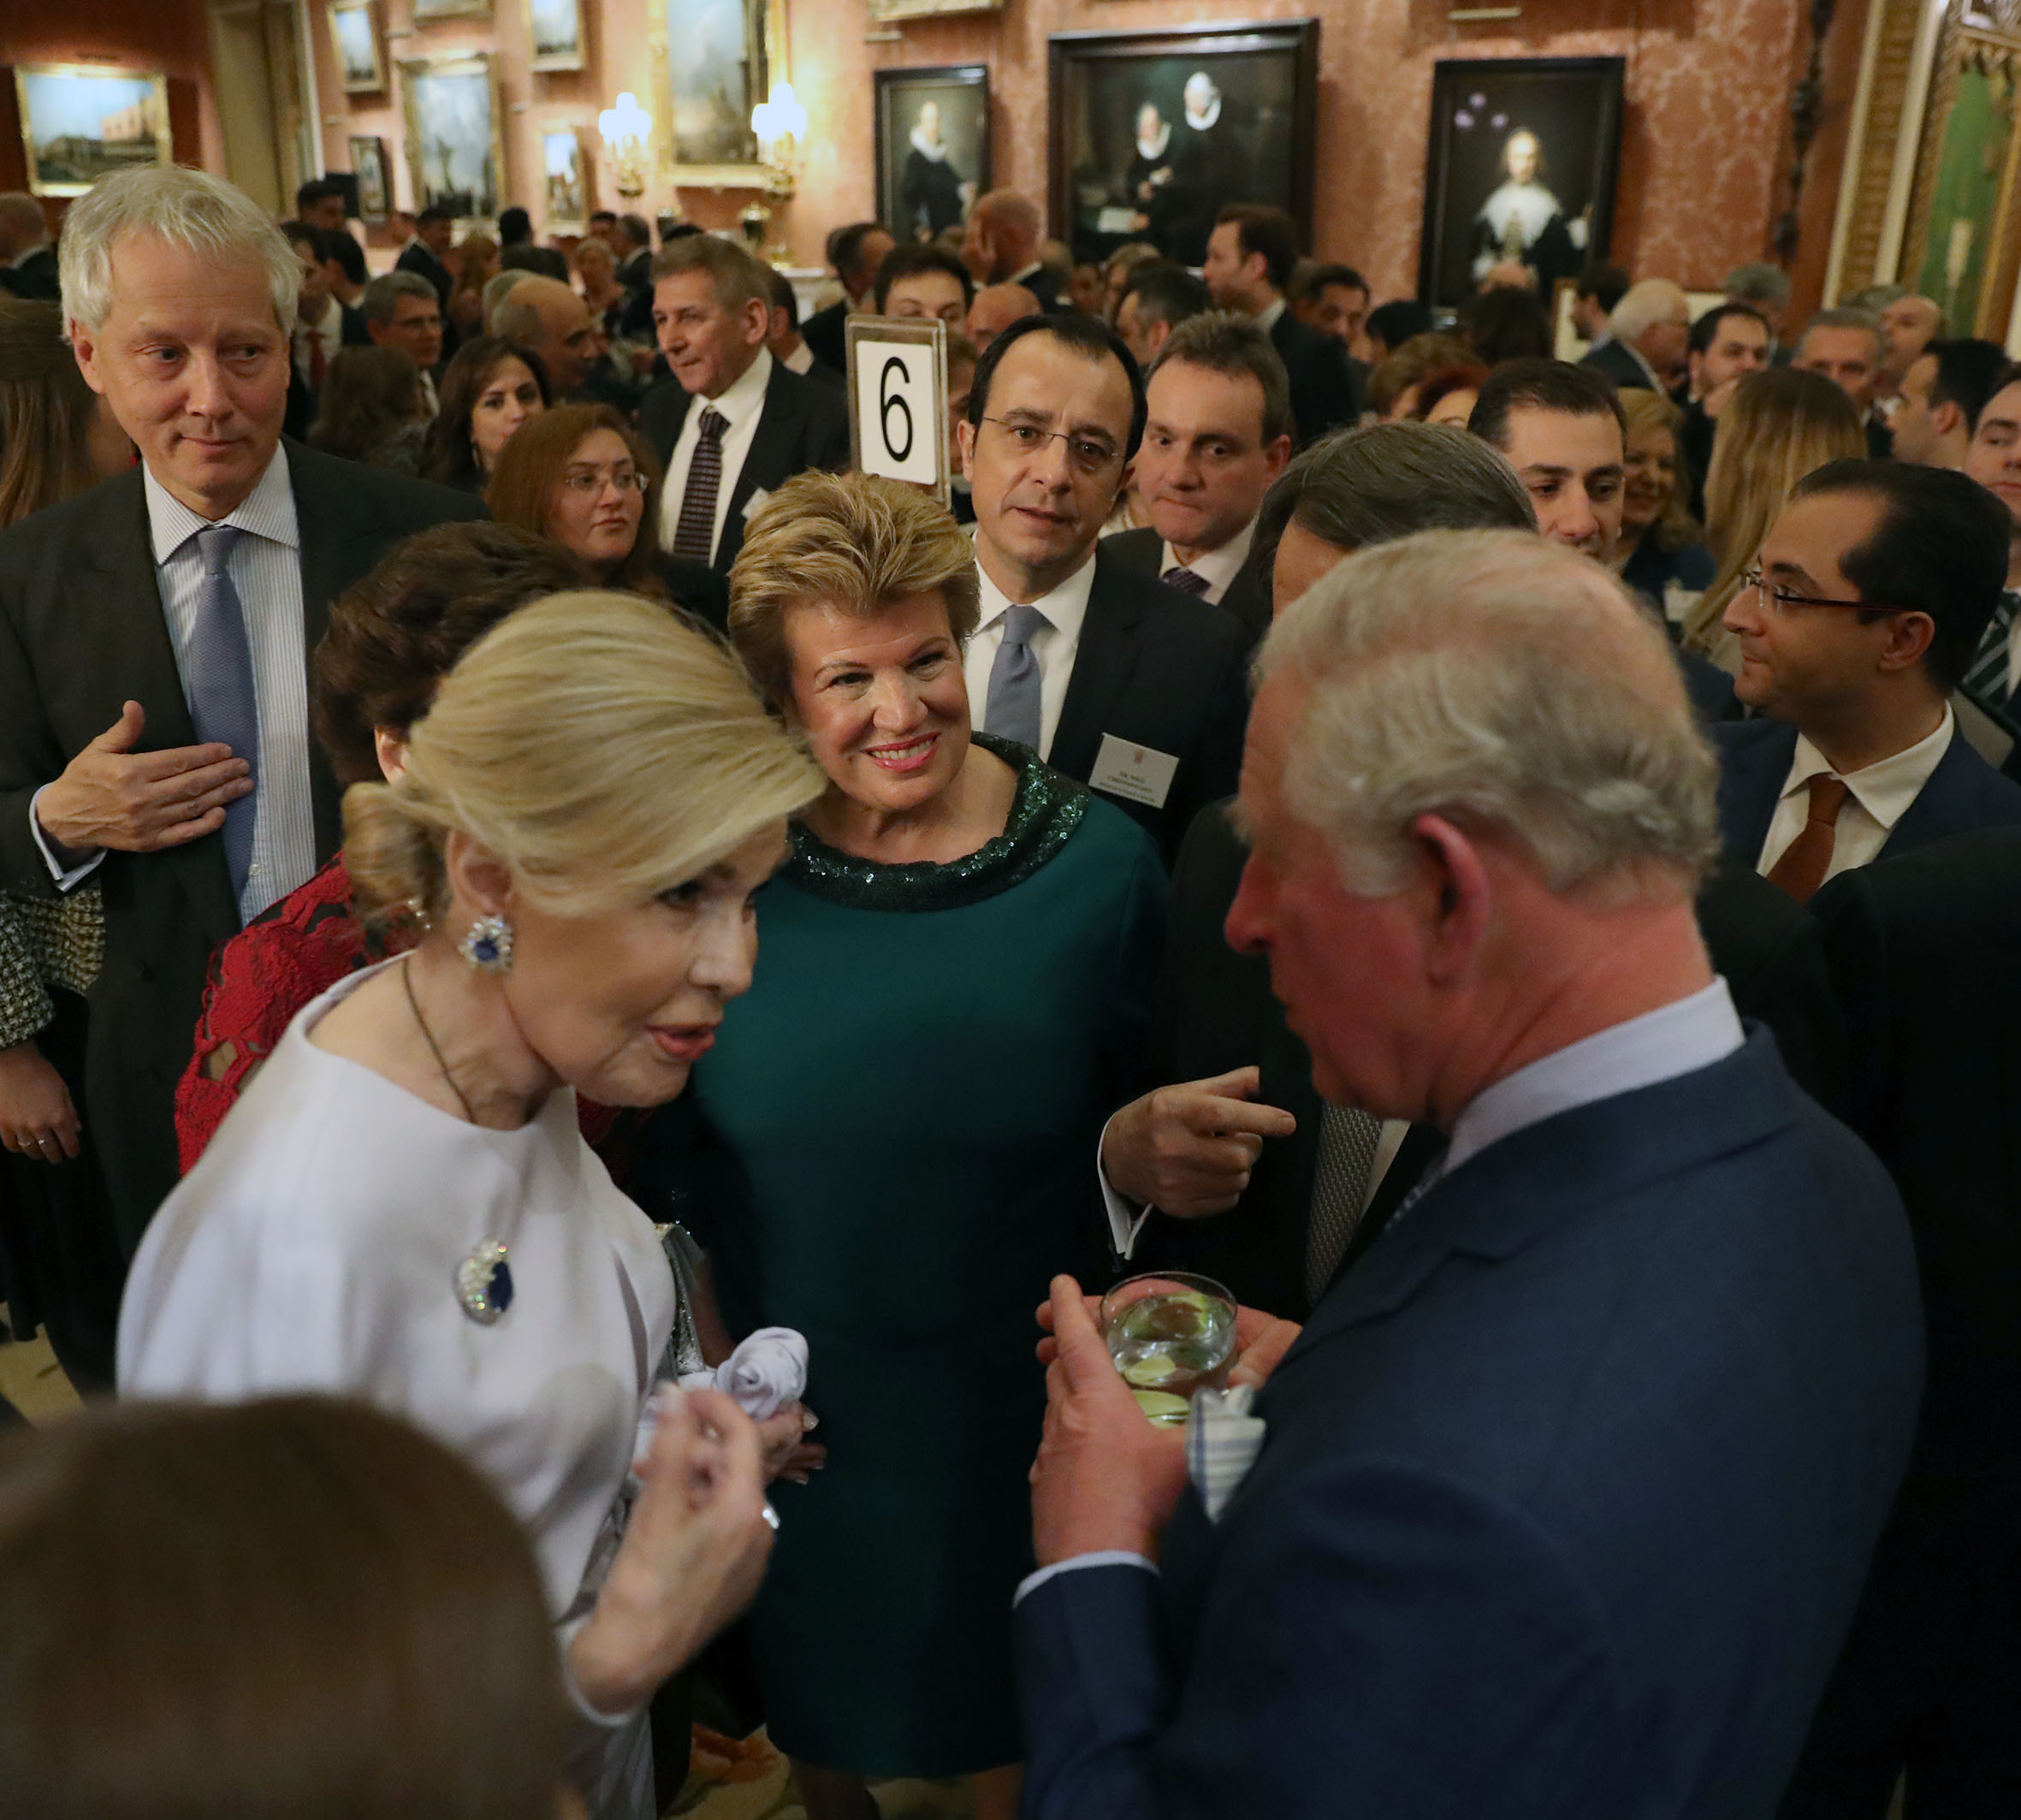 Μαριάννα Βαρδινογιάννη: Η συνάντηση με τον Πρίγκιπα Κάρολο στο Παλάτι του Μπάκιγχαμ! [pics]